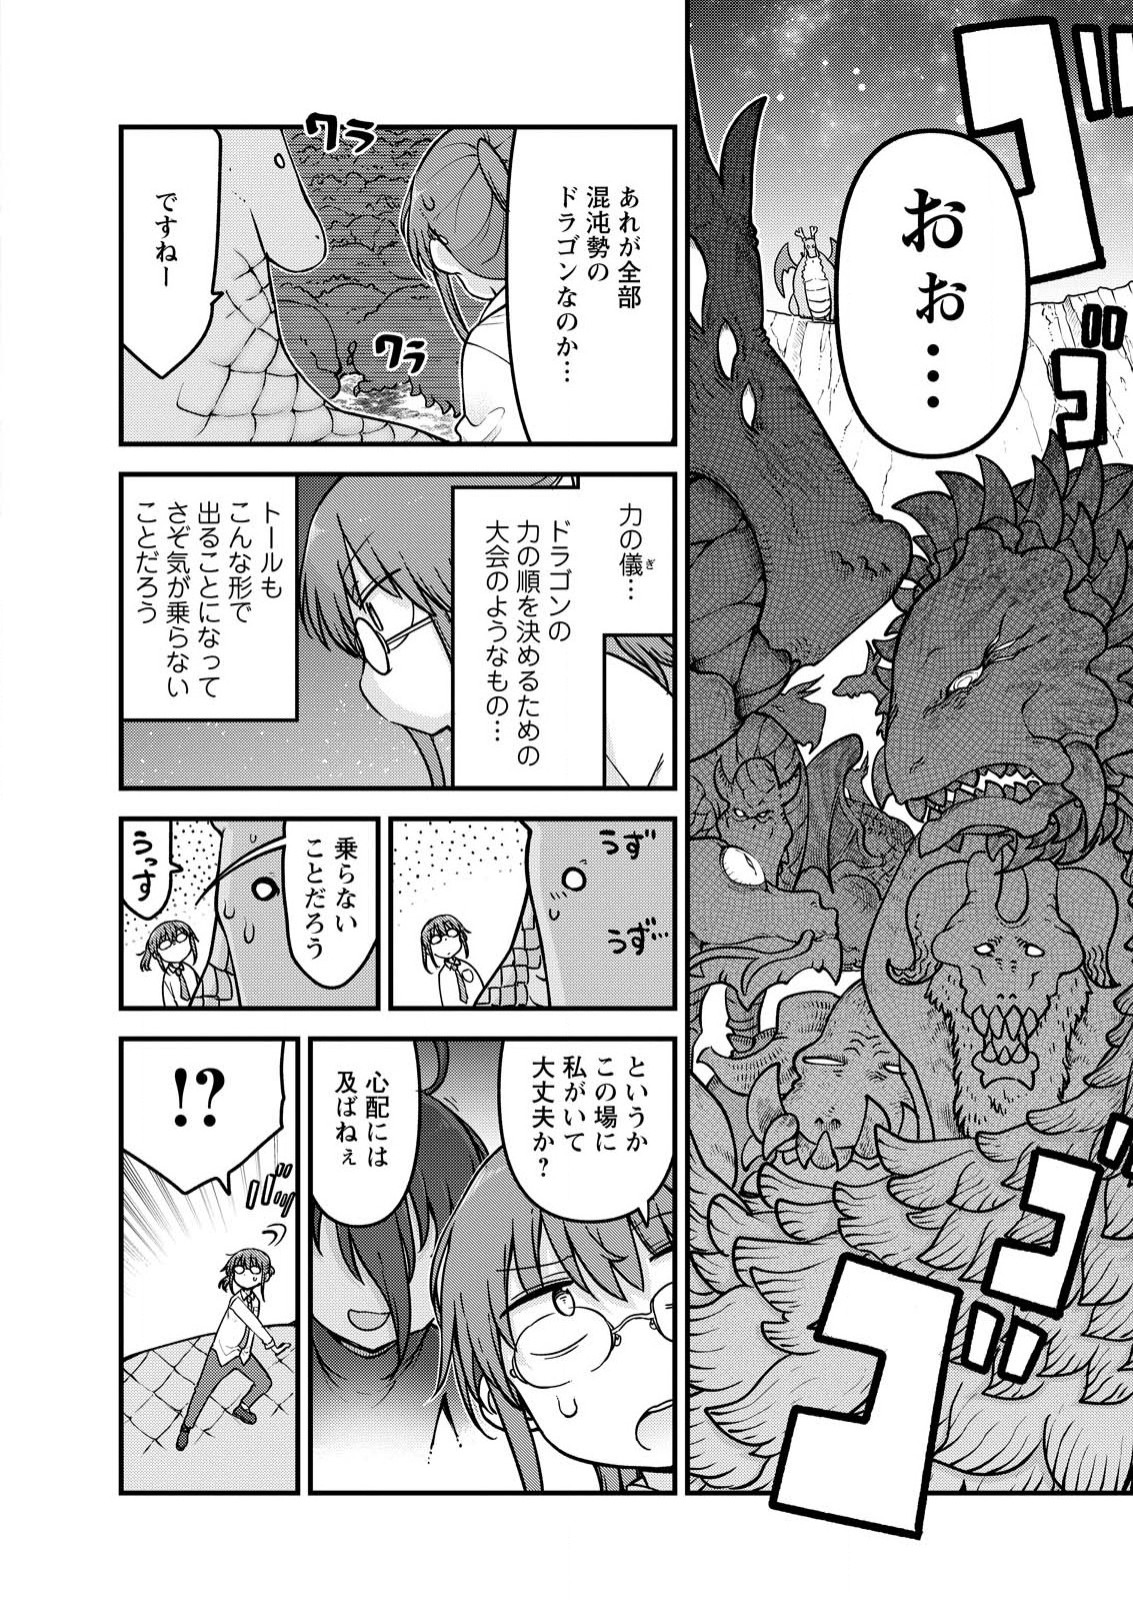 Kobayashi-san Chi no Maid Dragon - Chapter 142 - Page 2